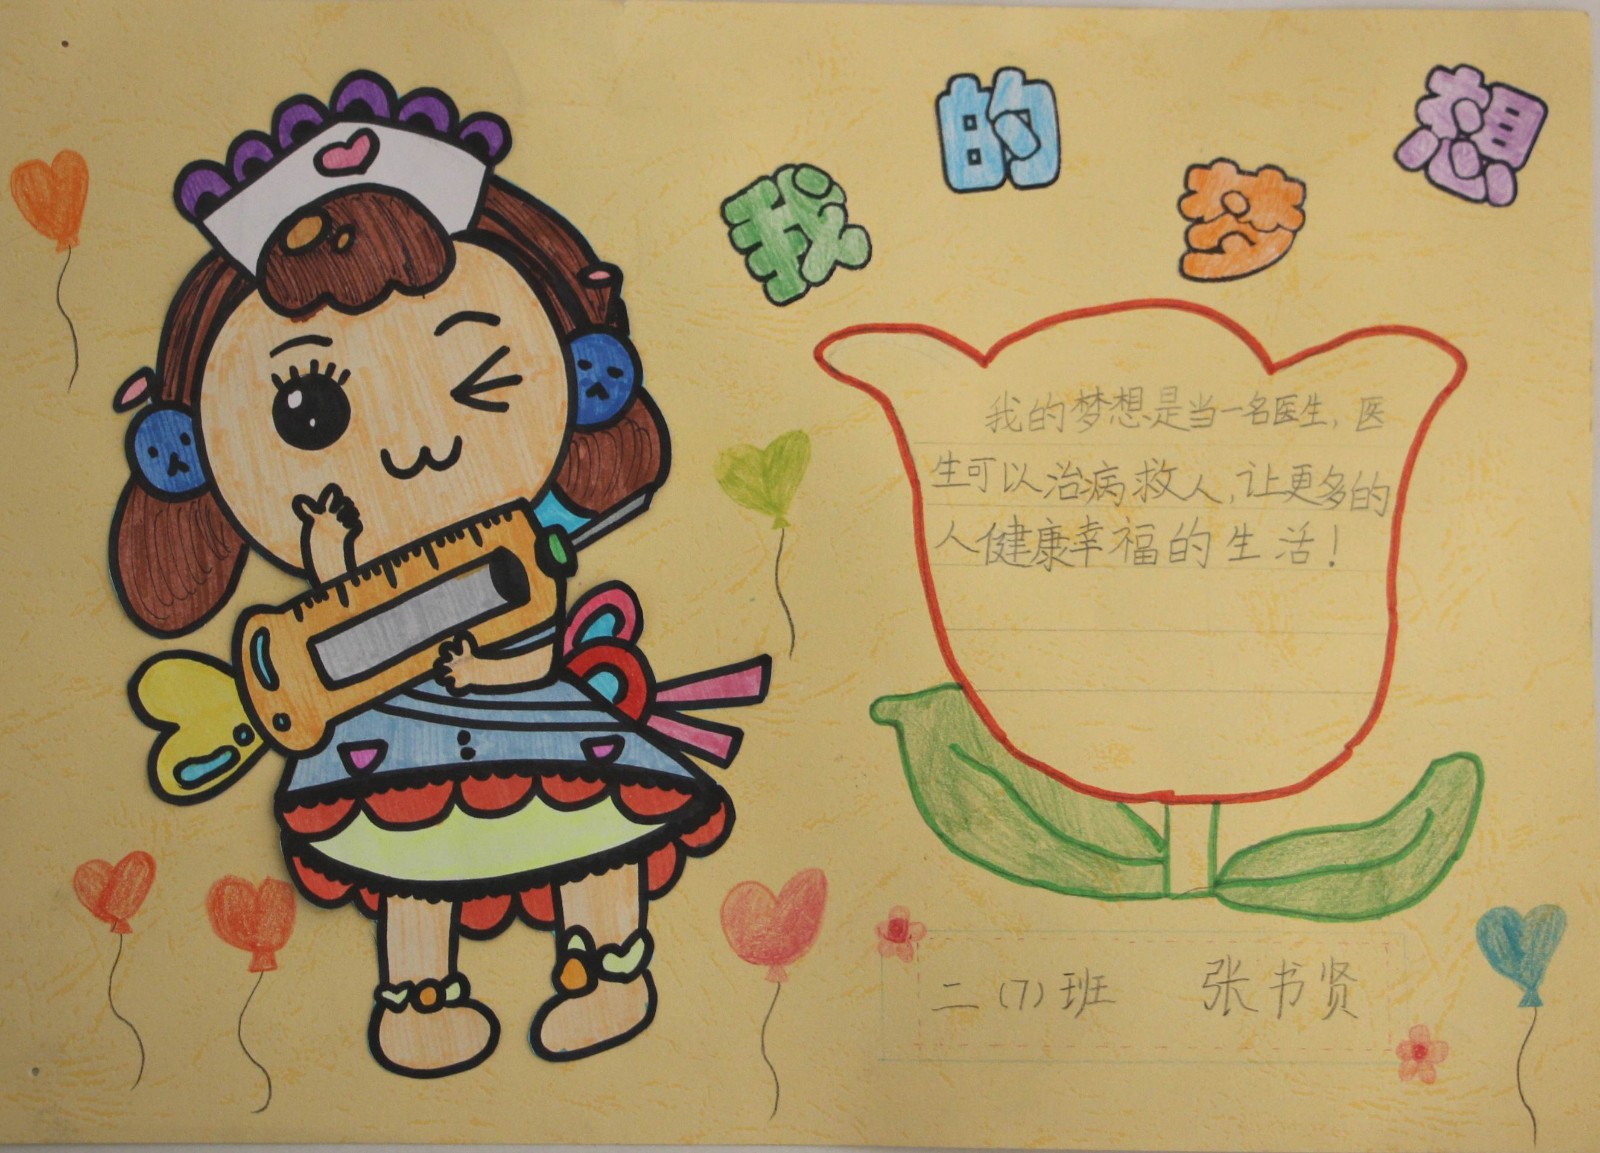 龙川小学海棠花梦想节二年级梦想卡片制作选展